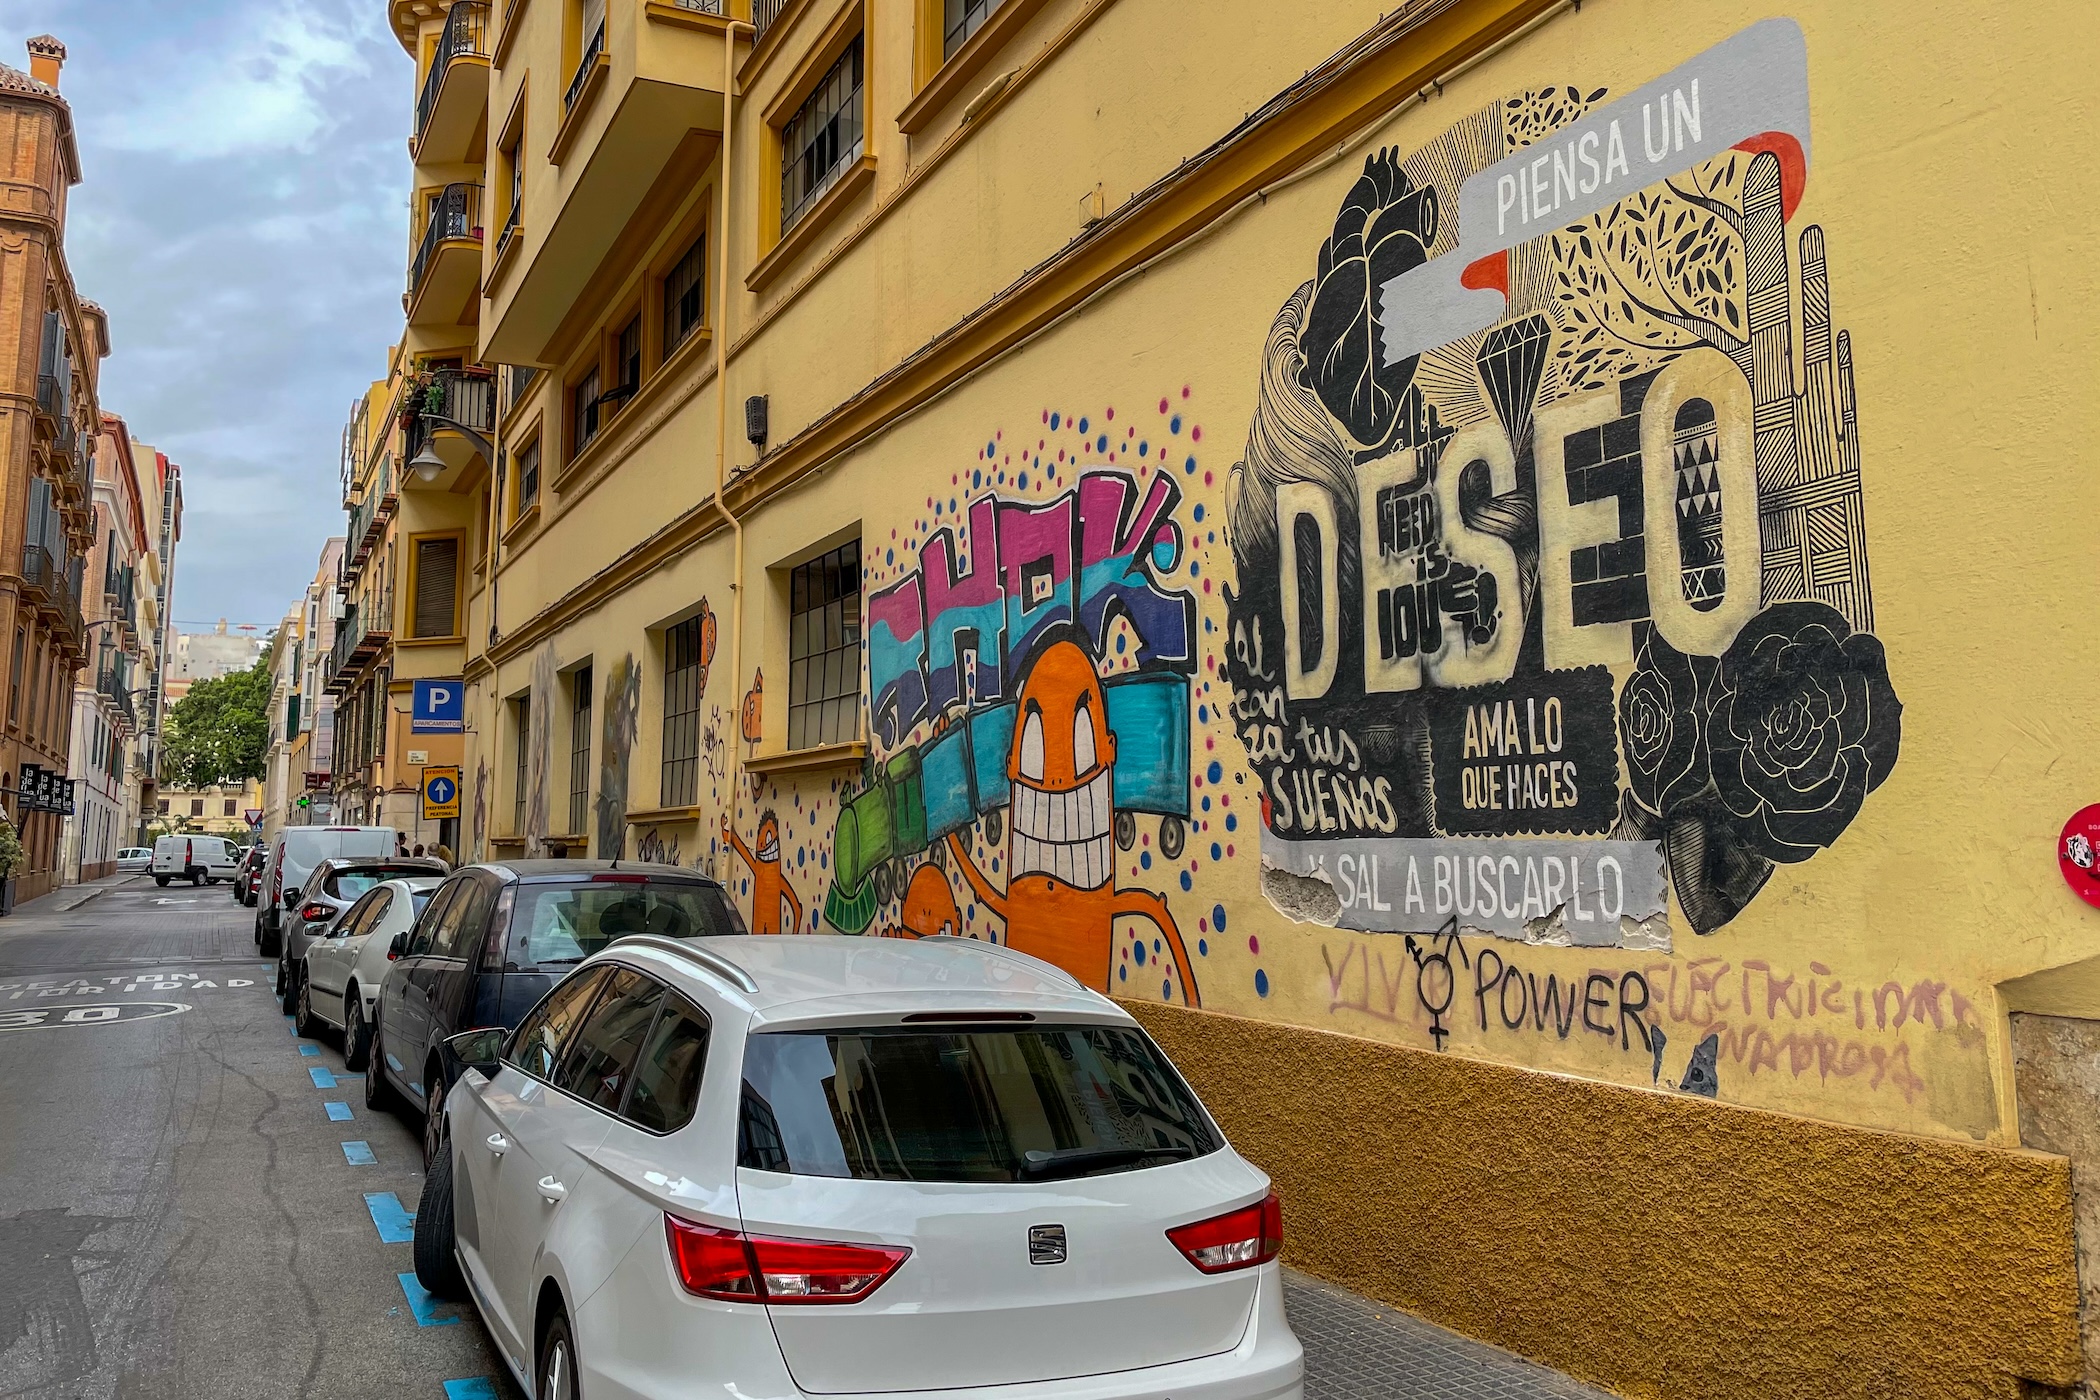 Ontdek de leukste wijken om te verblijven in Malaga: de perfecte getaway aan de Costa del Sol